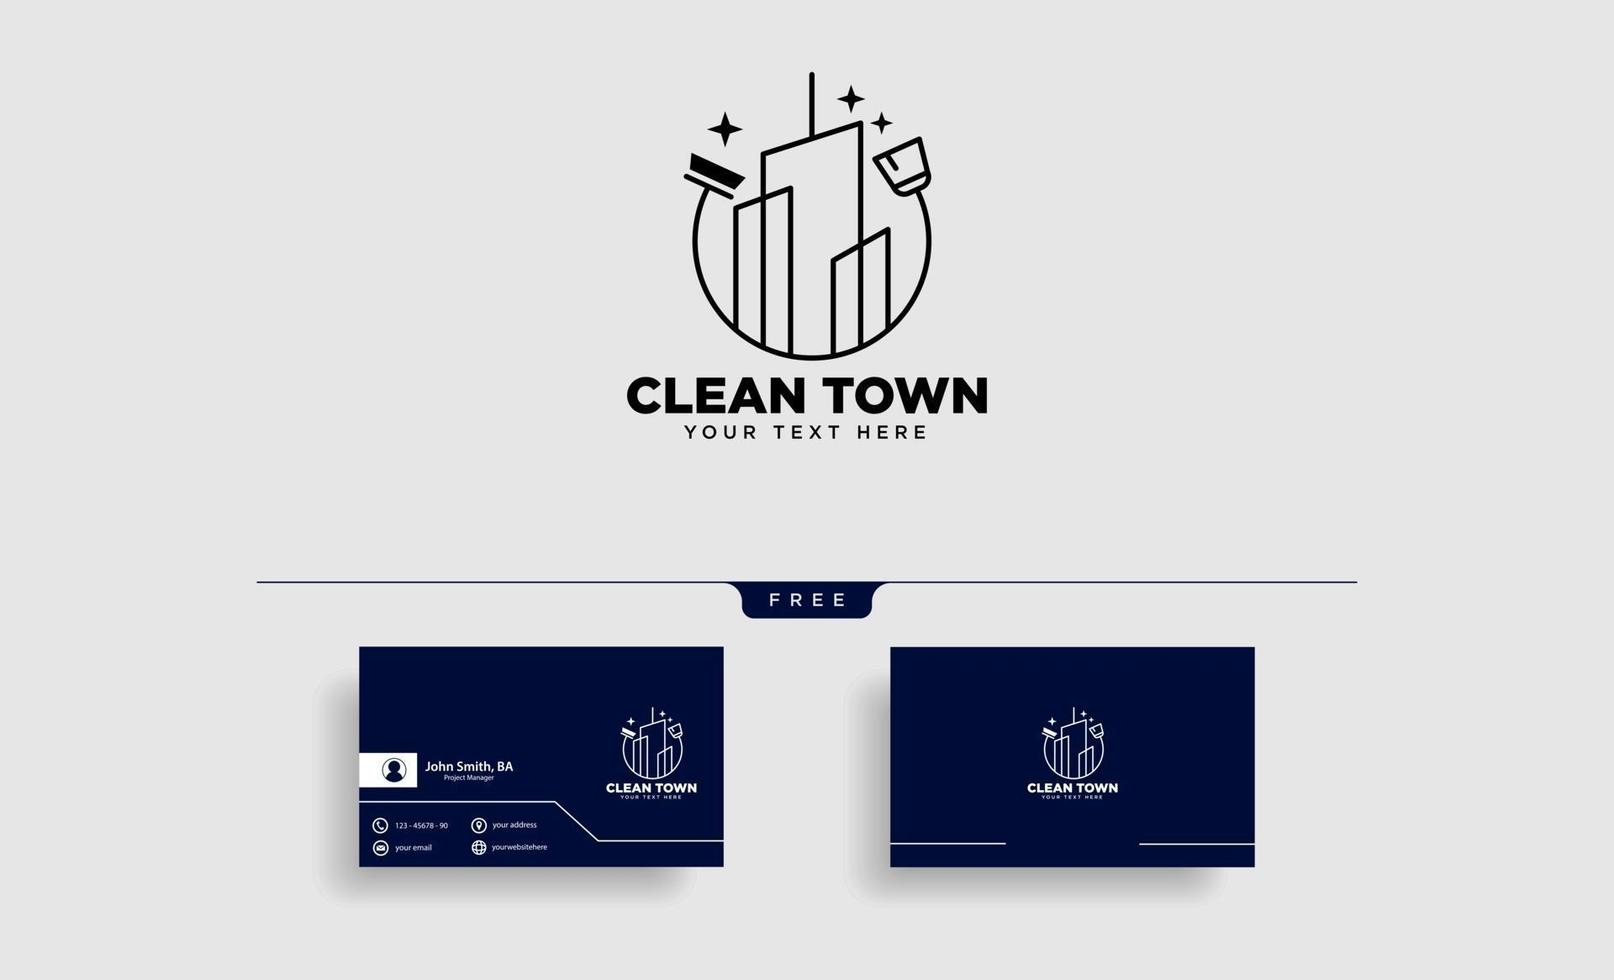 schoonmaak service stad of gemeente logo sjabloon vector illustratie pictogram element geïsoleerde vector